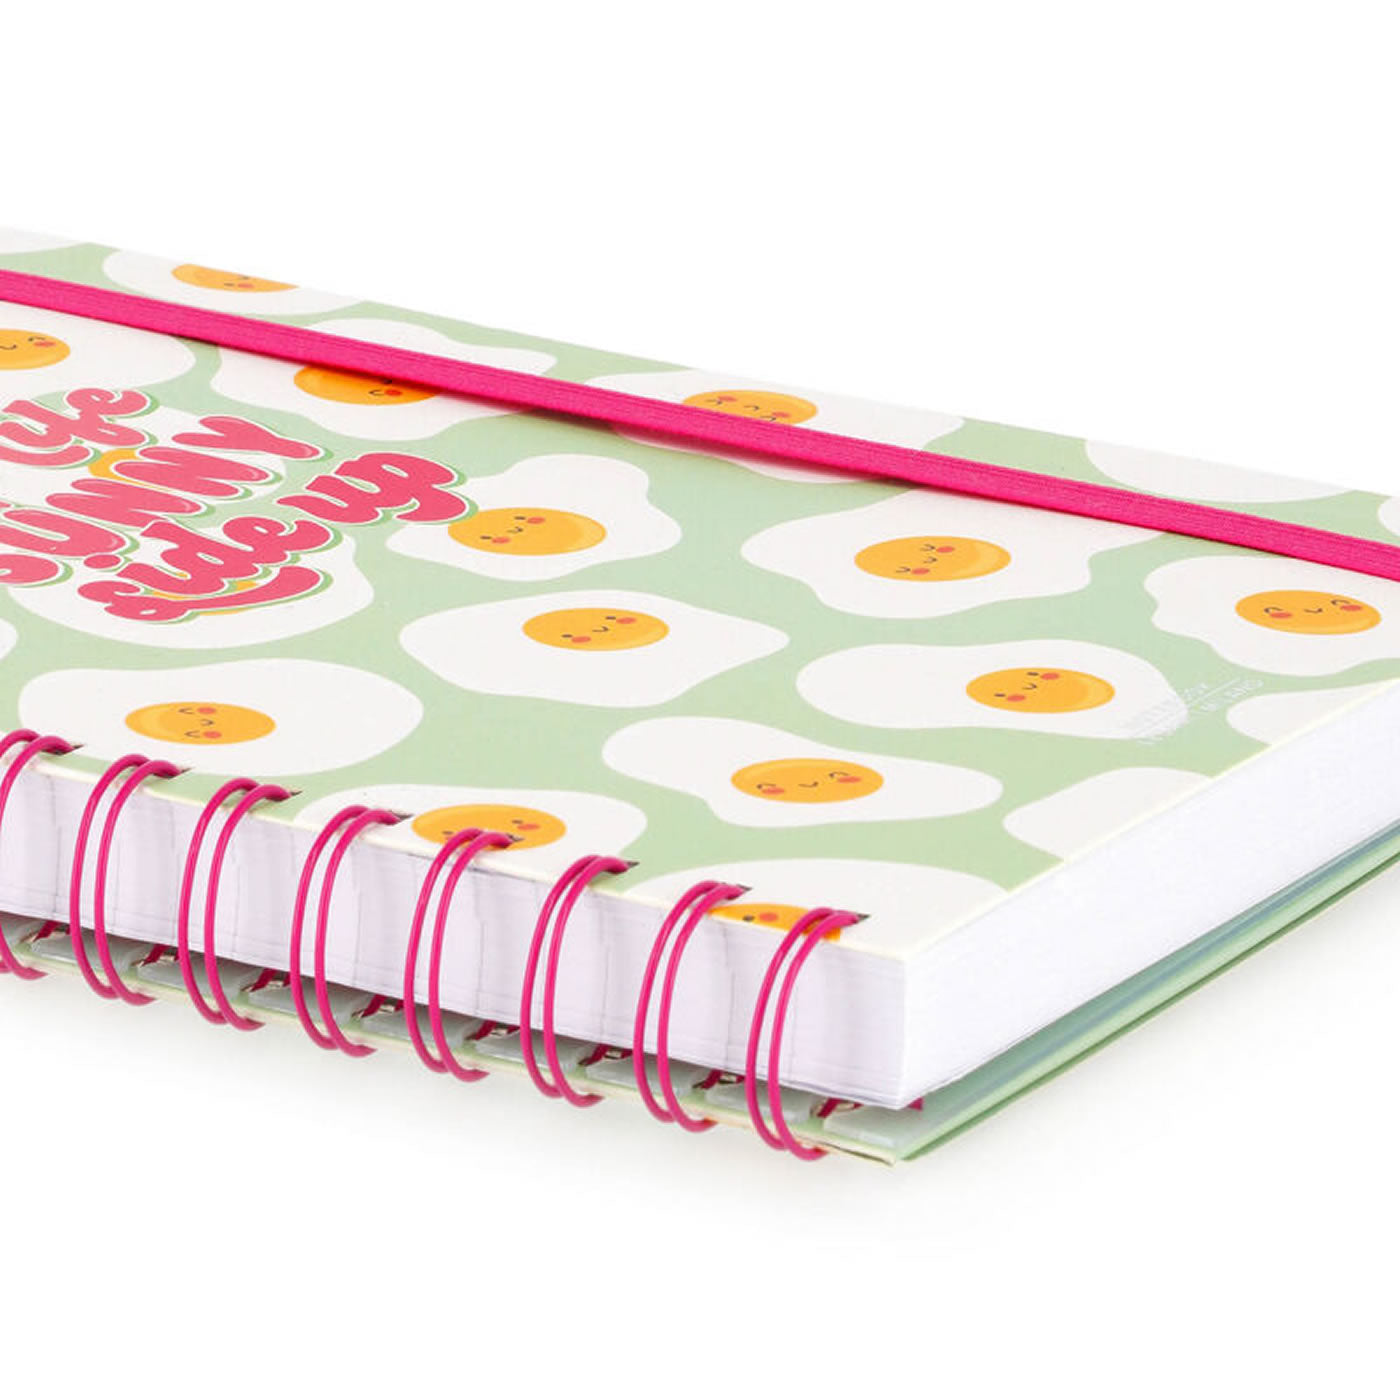 Legami Egg Large Spiral Notebook - Lined